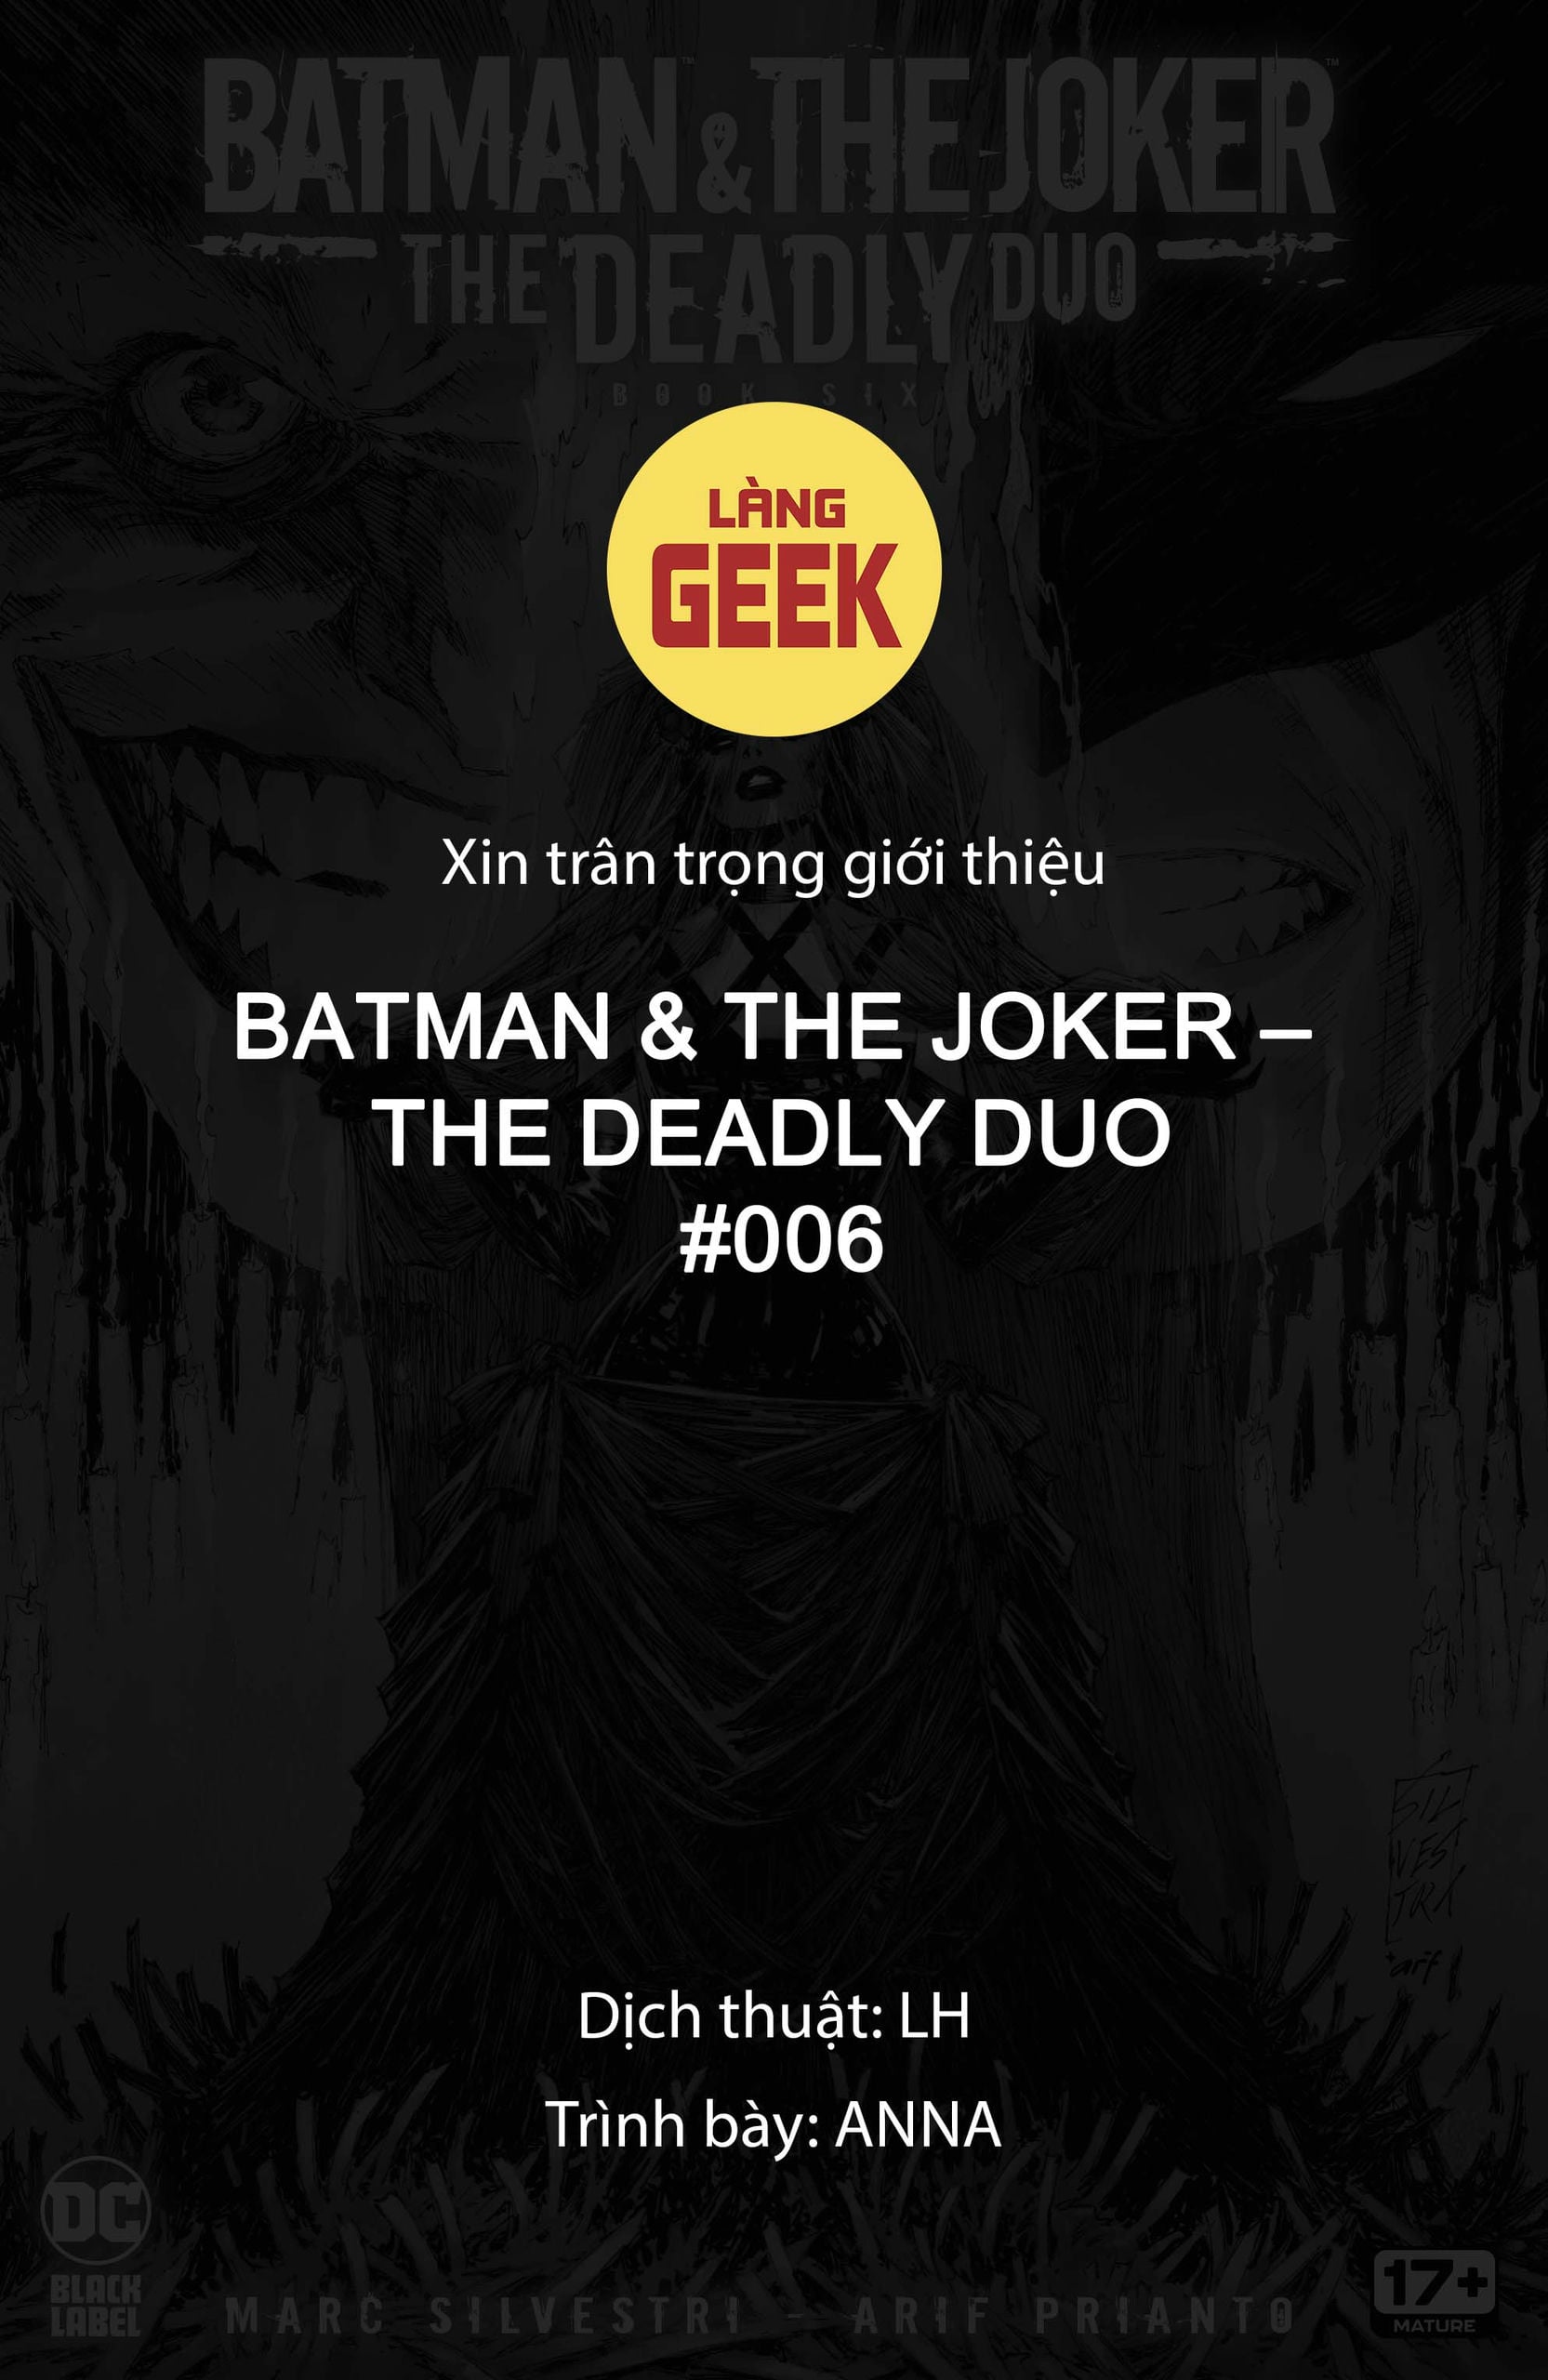 https://langgeek.net/wp-content/webpc-passthru.php?src=https://langgeek.net/wp-content/uploads/2023/05/Batman-_-The-Joker-The-Deadly-Duo-2022-006-001.jpg&nocache=1